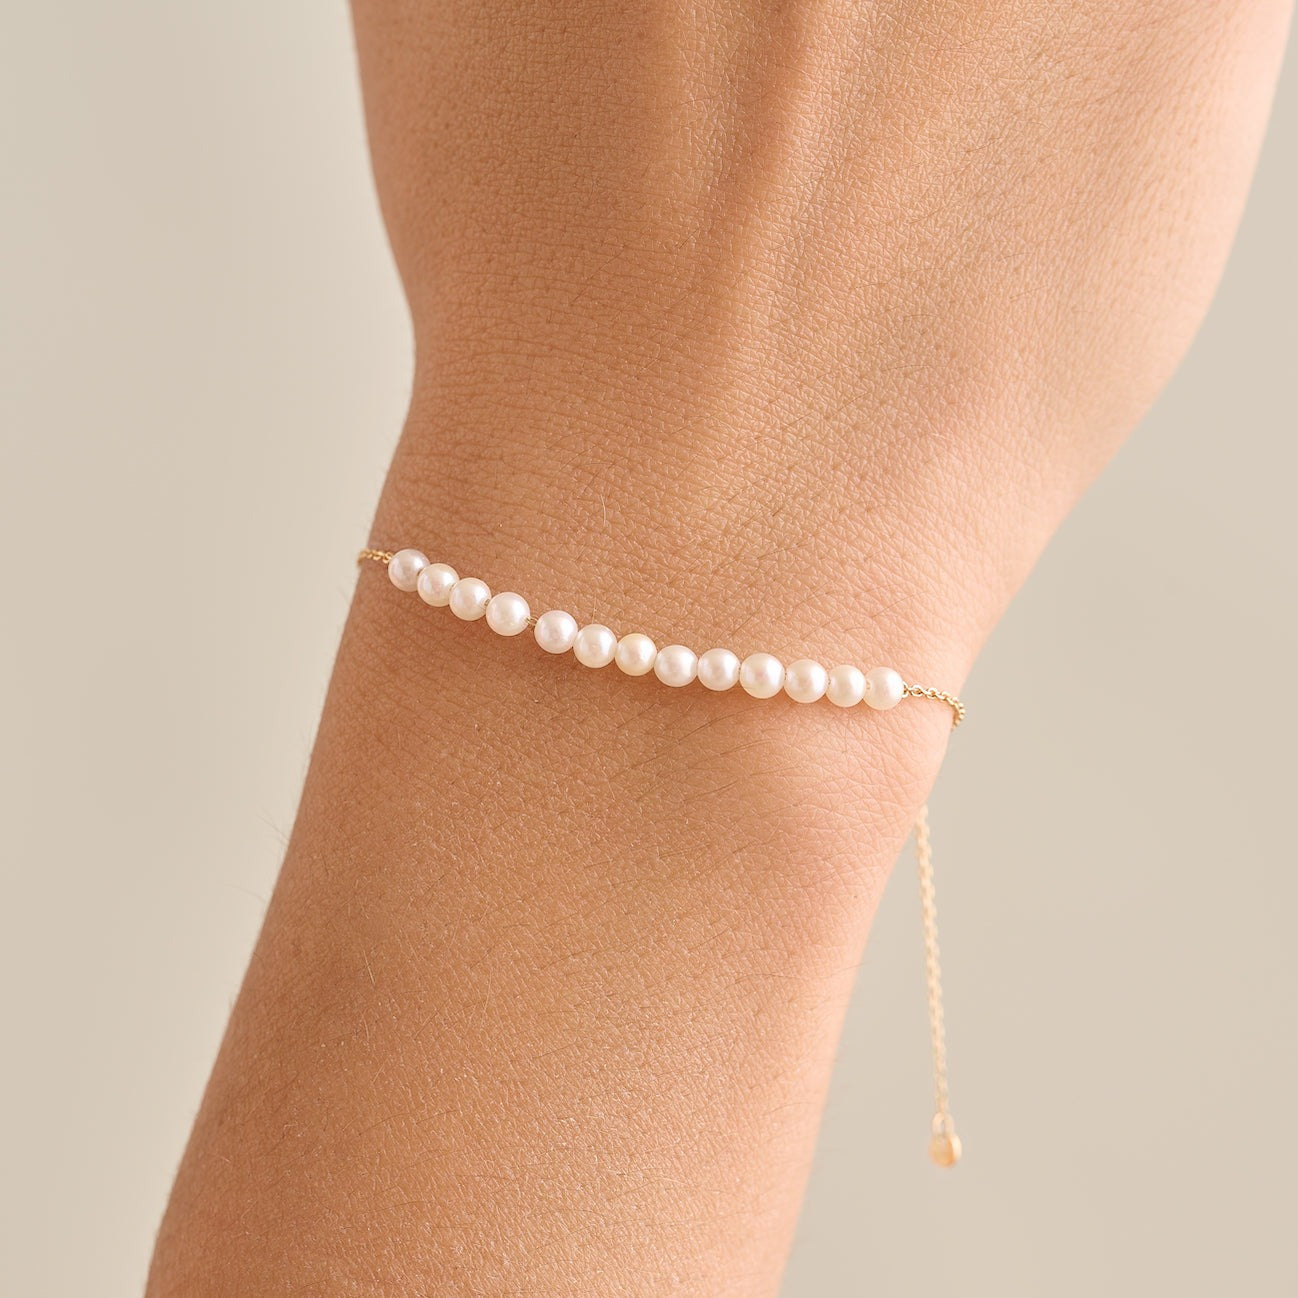 Single pearl gold filled bracelet - NicteShop